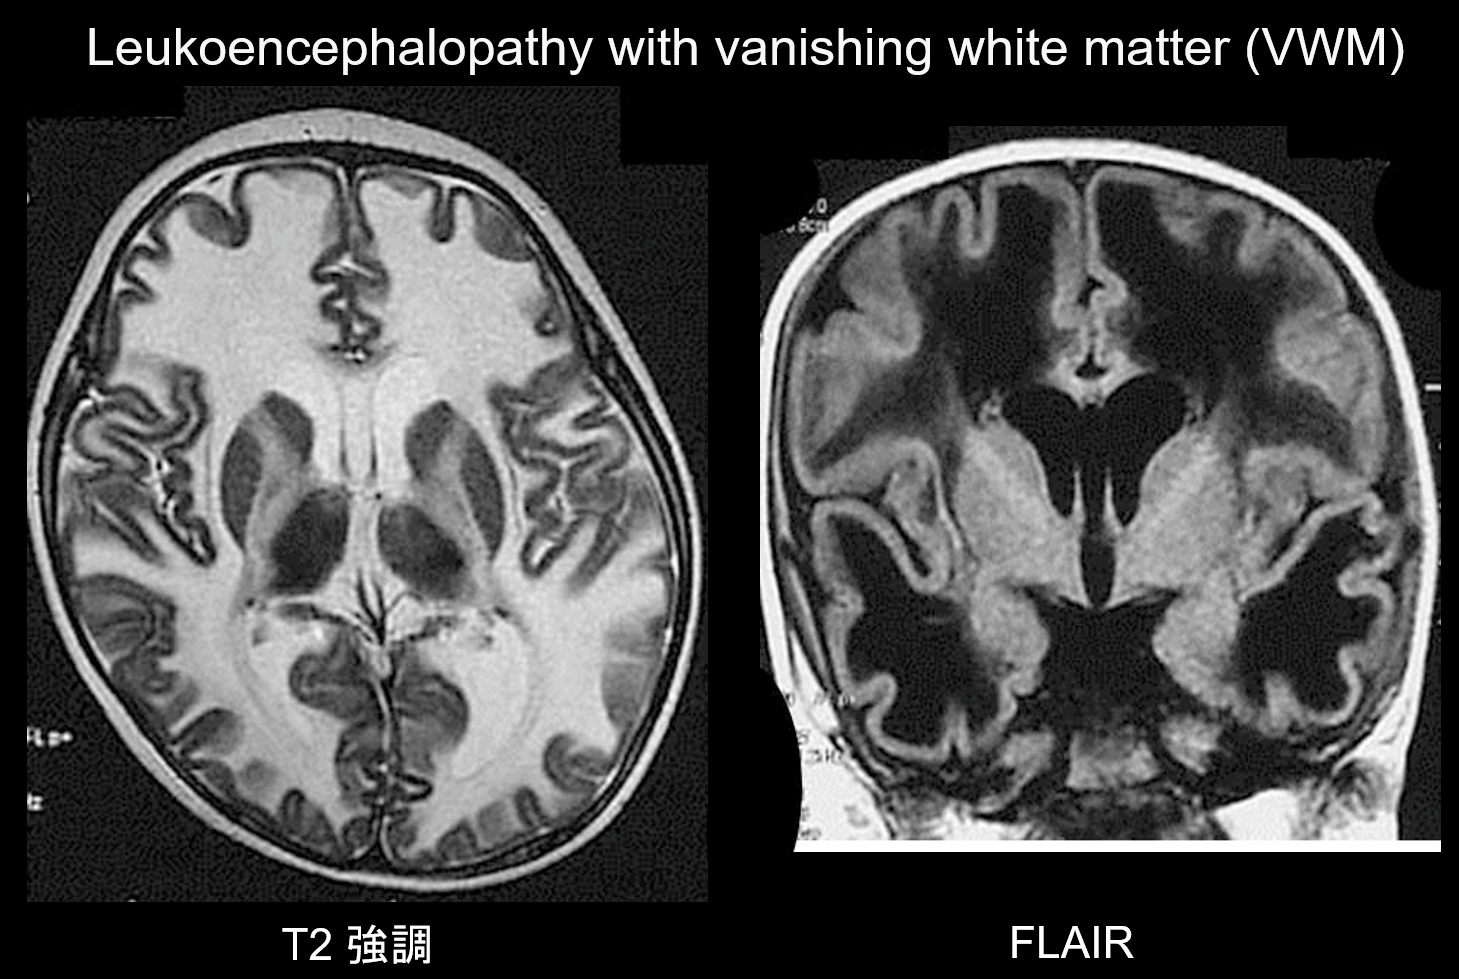 図8. Leukoencephalopathy with vanishing white matter、乳児、発達退行。